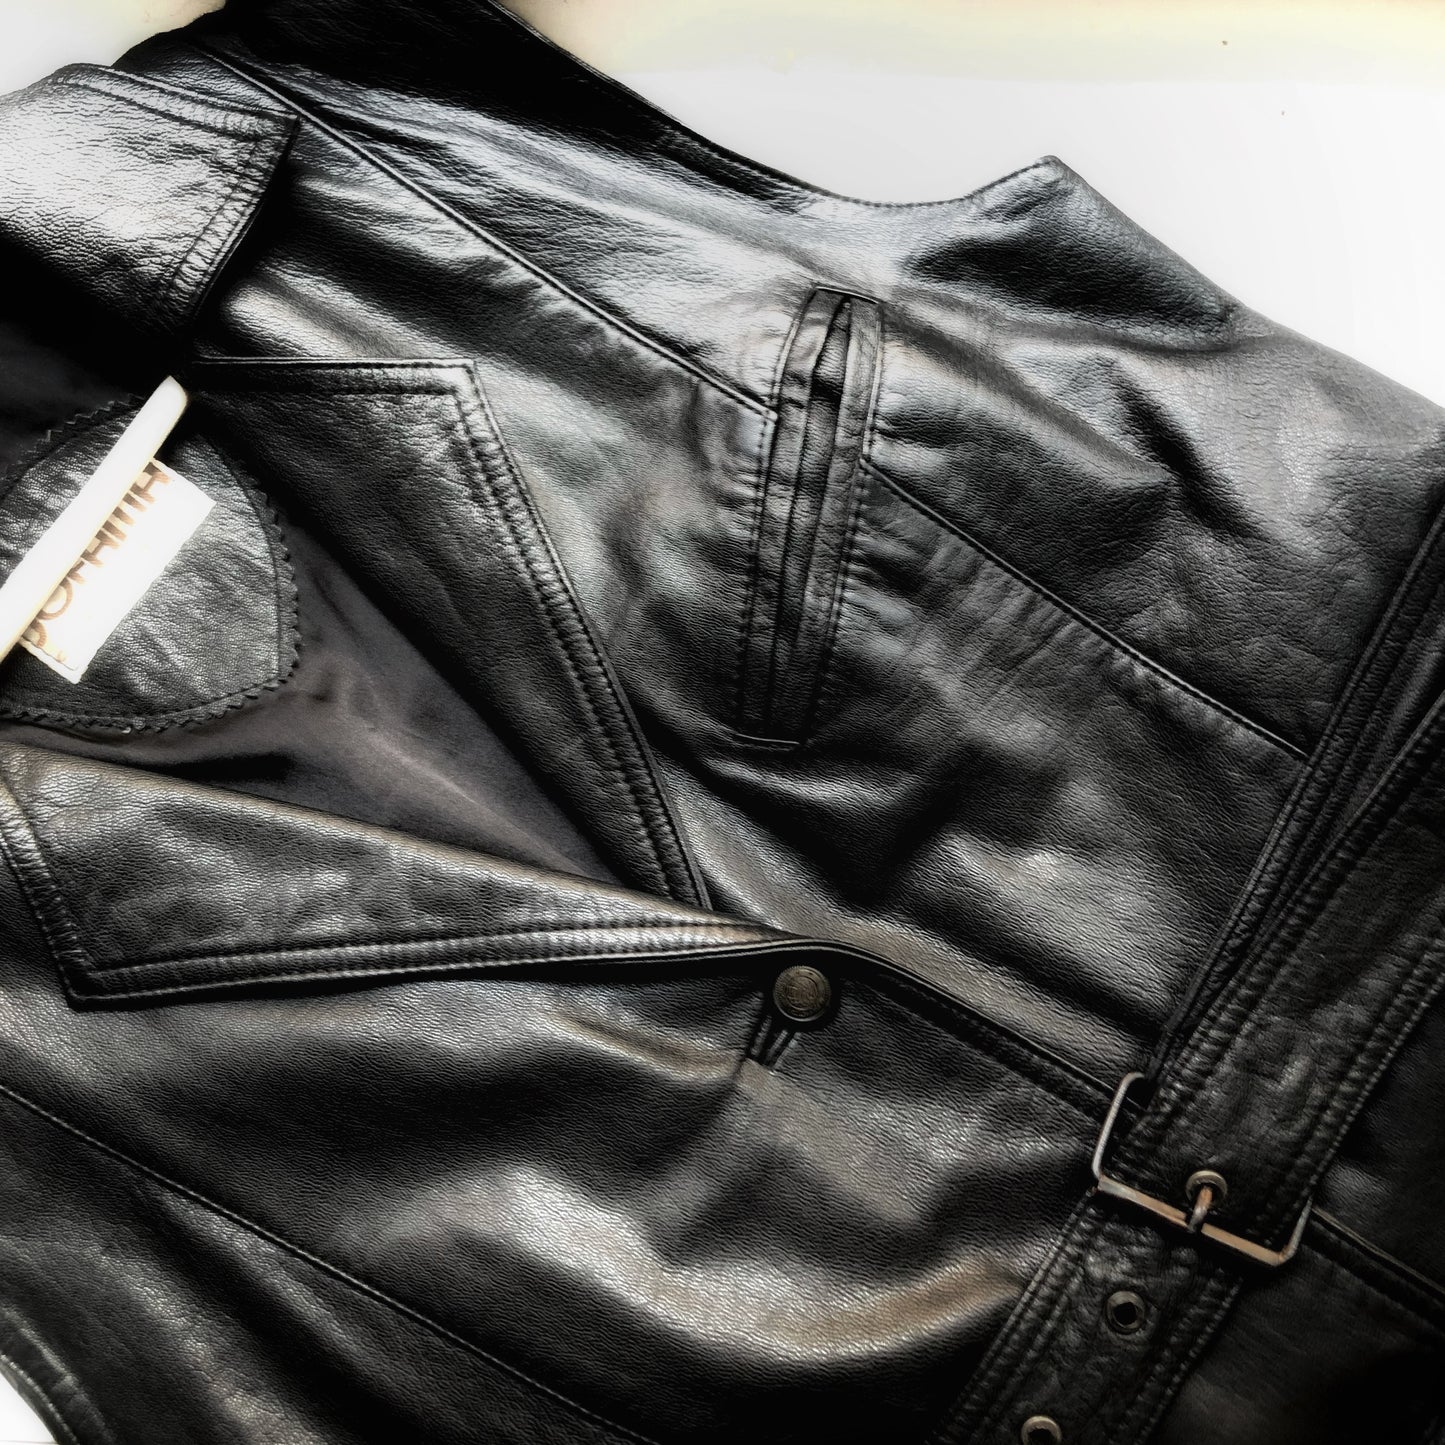 Vintage Long Leather Vest